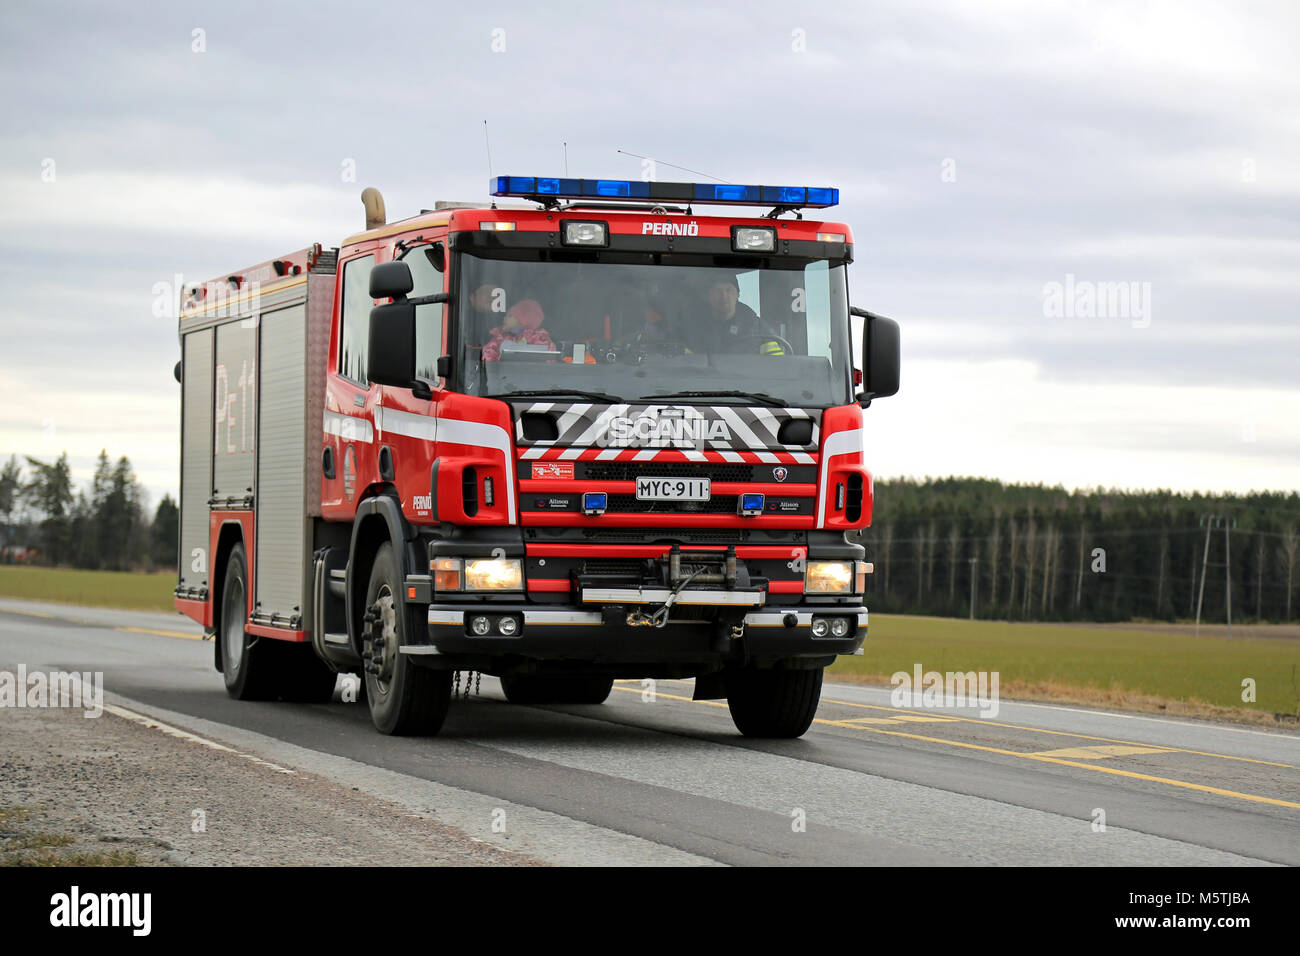 SALO, Finnland - 22. MÄRZ 2015: Scania Lkw Brand auf der Autobahn 52. Ein traditionelles Scania Wasser-Rettung Ausschreibung wird in der Regel in einem 4x2 oder 4x4 Konfiguration gebaut Stockfoto